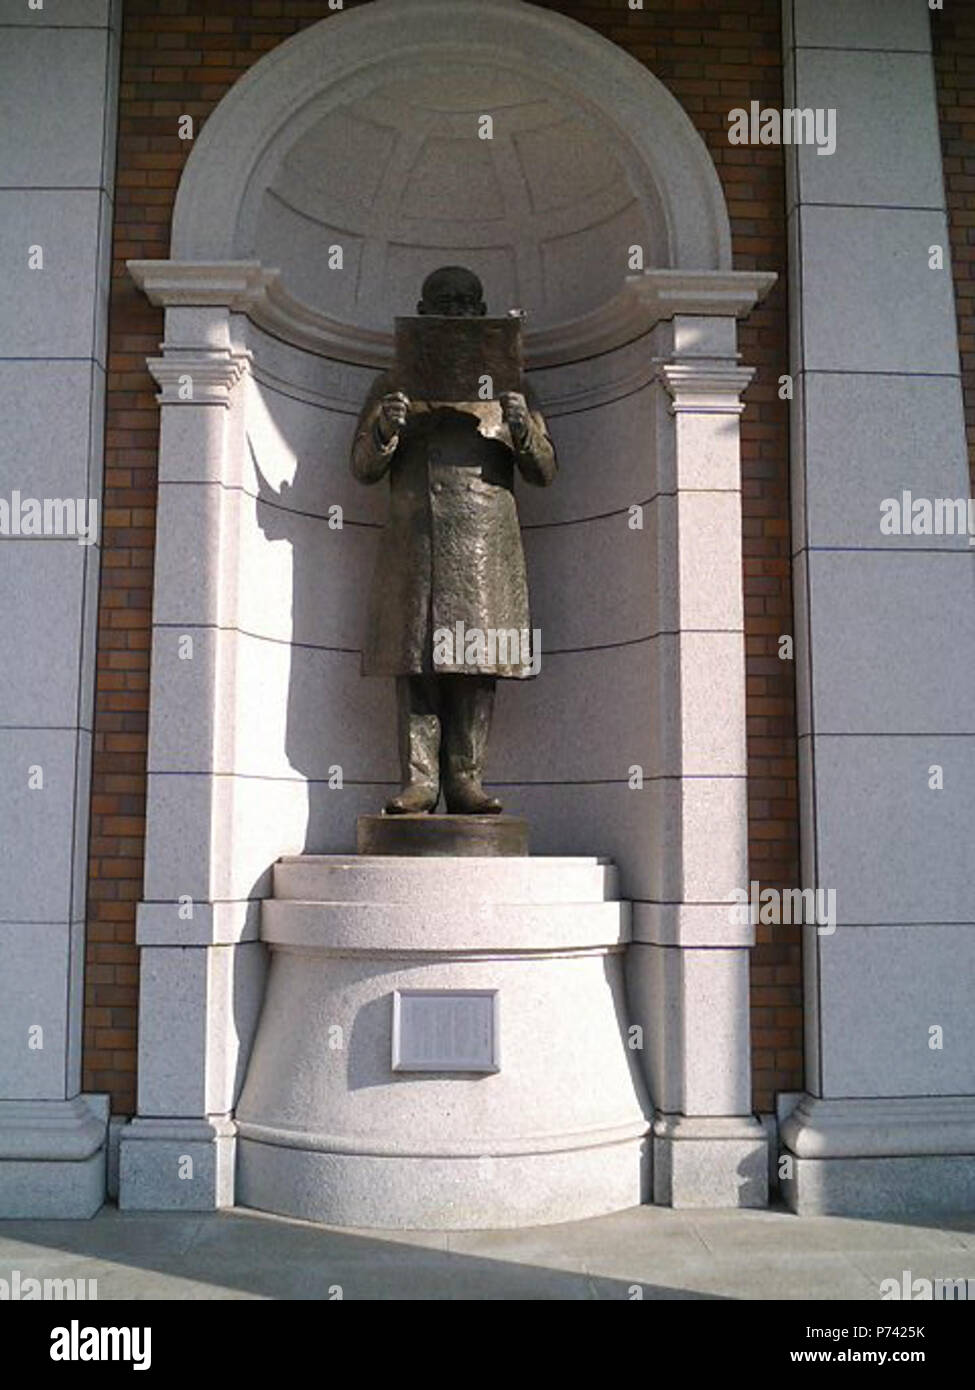 Englisch: Bronzestatue von Katsura Tar (1848-1913), General der Kaiserlichen Japanischen Armee und der Premierminister von Japan. Die Statue ist in Hachiji, Tokio, Japan. :. 15 Februar 2006 1 KatsuraTaroBronzeStatue Stockfoto